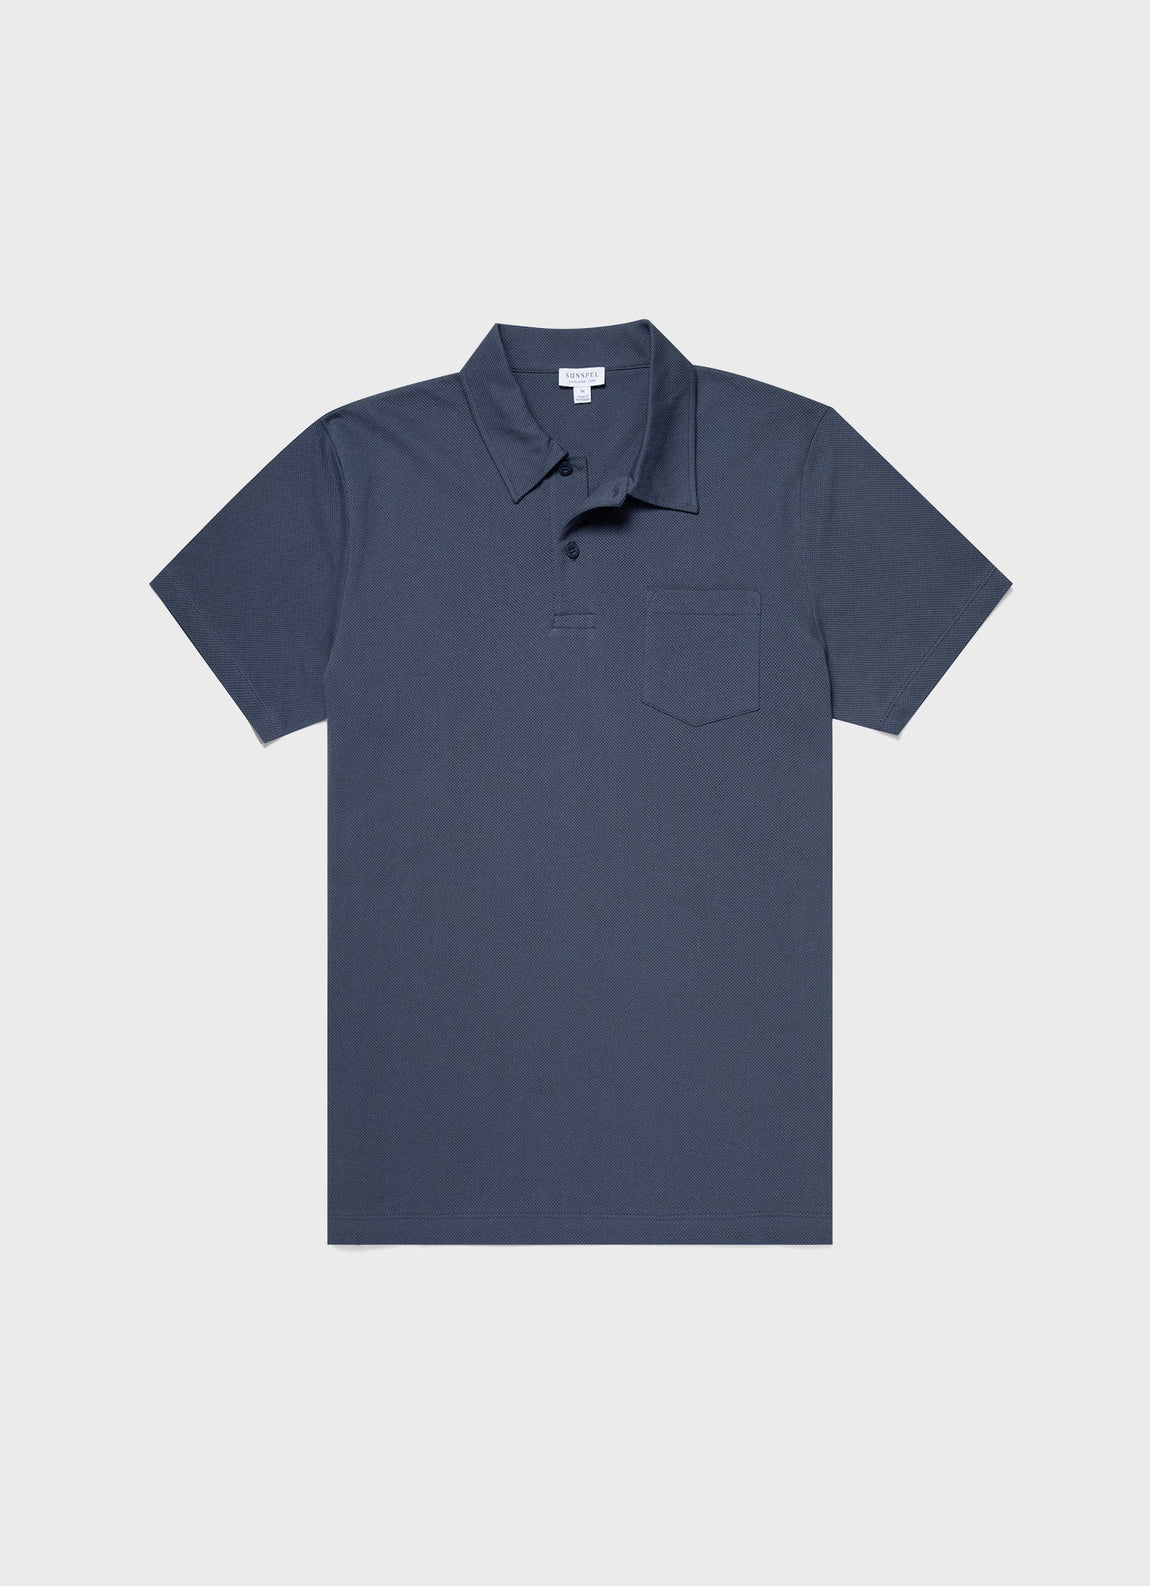 Men's Riviera Polo Shirt in Slate Blue | Sunspel